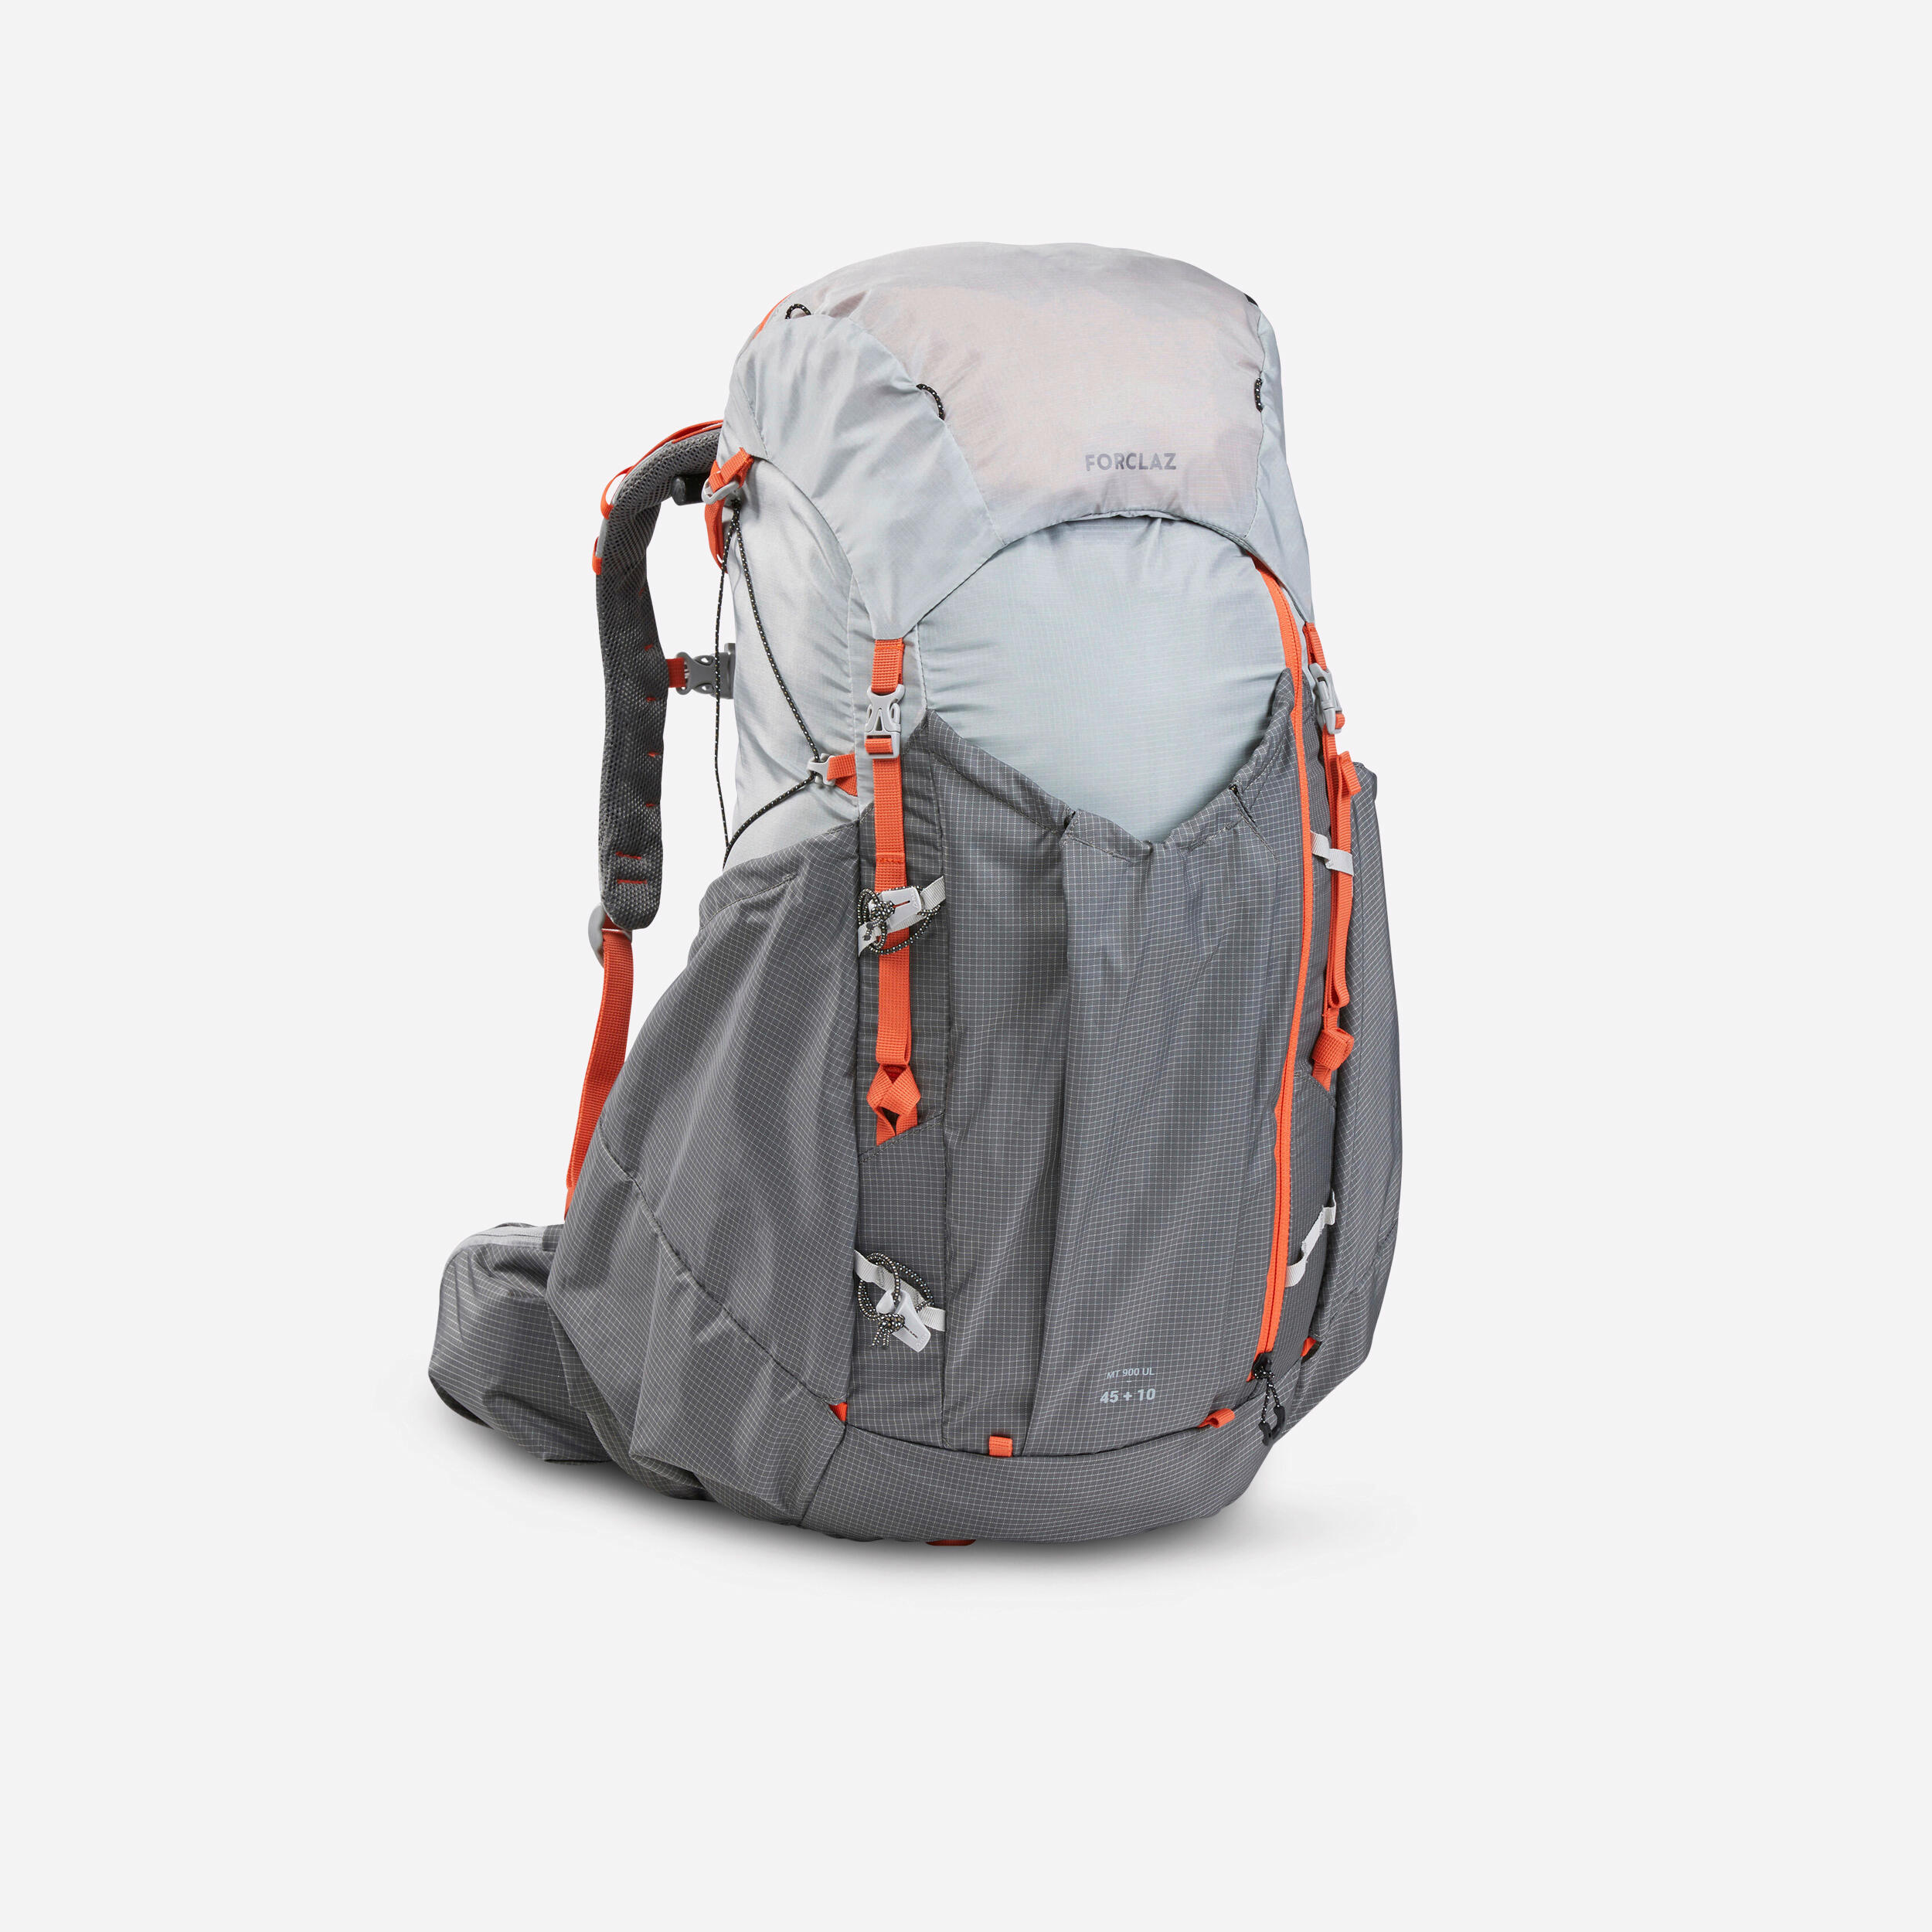 FORCLAZ Women’s Ultralight Trekking Backpack 45+10 L - MT900 UL